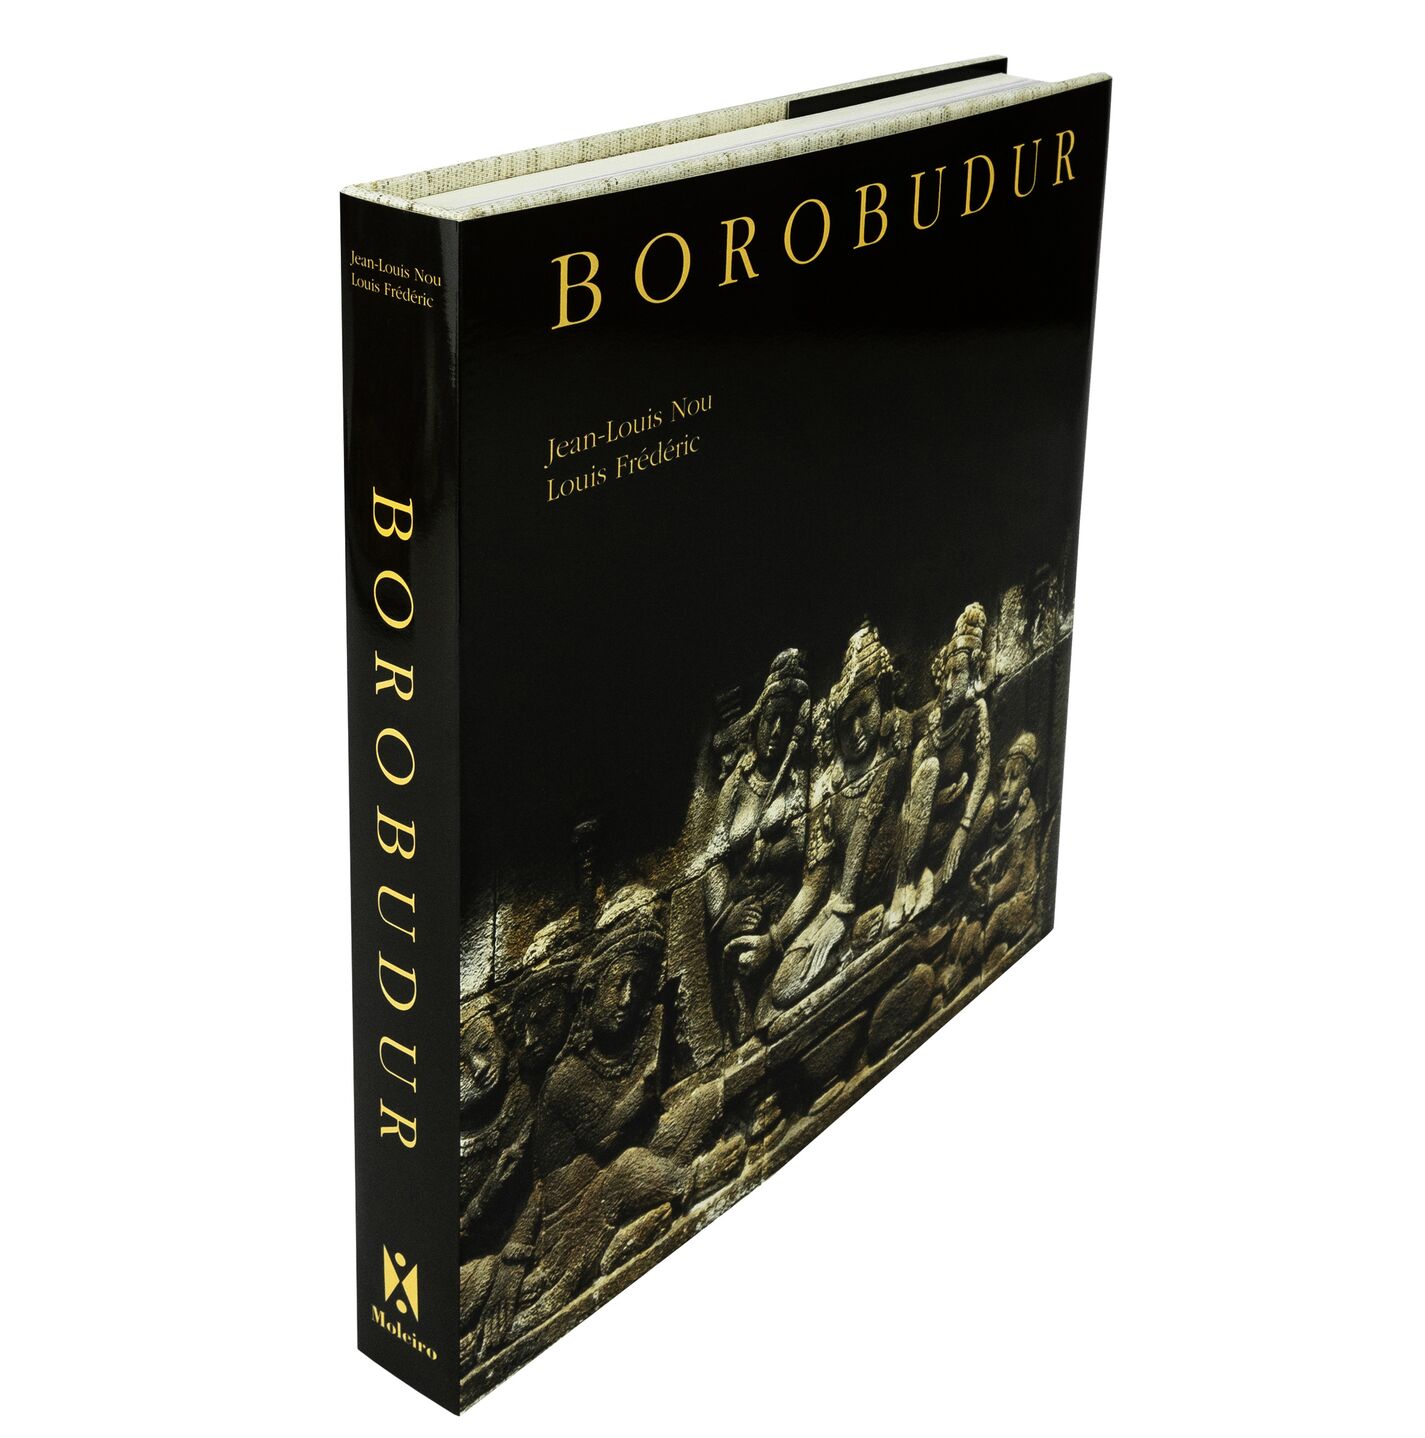 
Portada y lomo del Borobudur